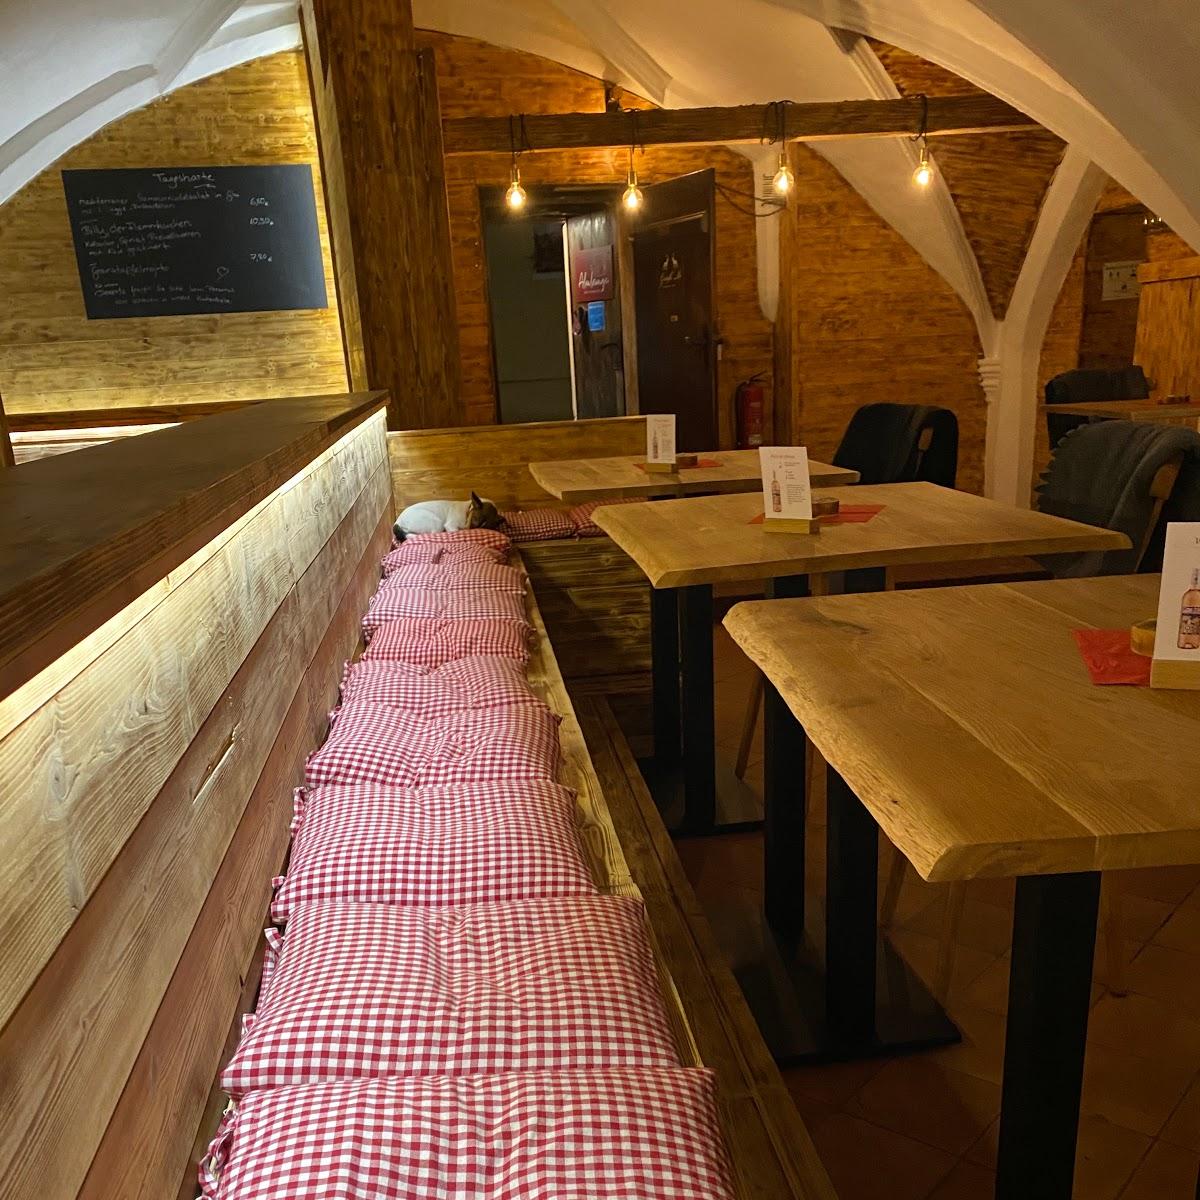 Restaurant "AlmLounge" in Landshut